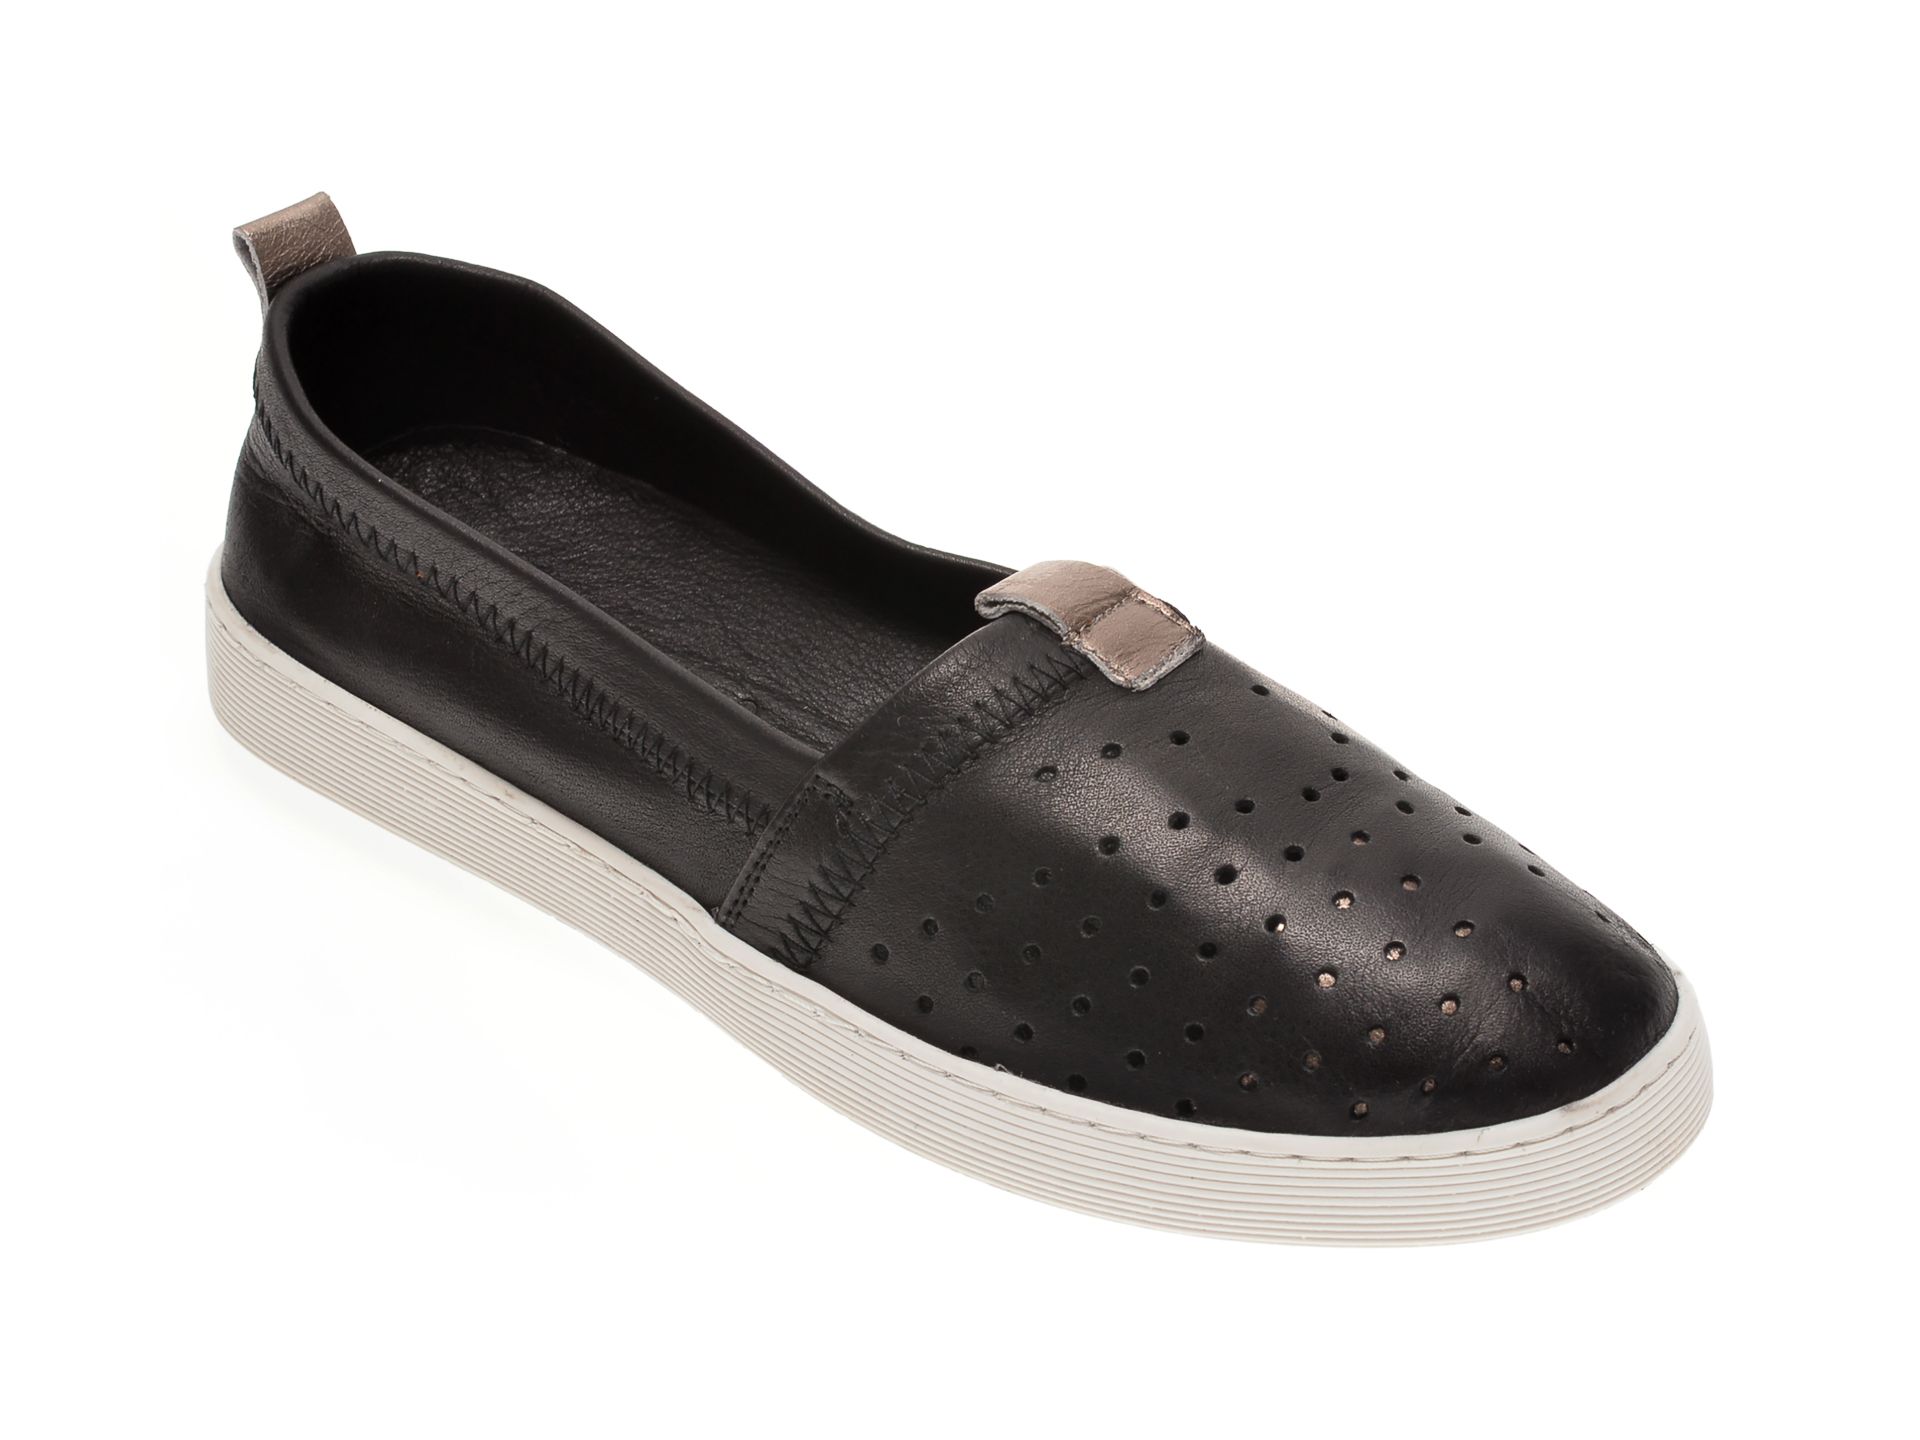 Pantofi BABOOS negri, R10, din piele naturala